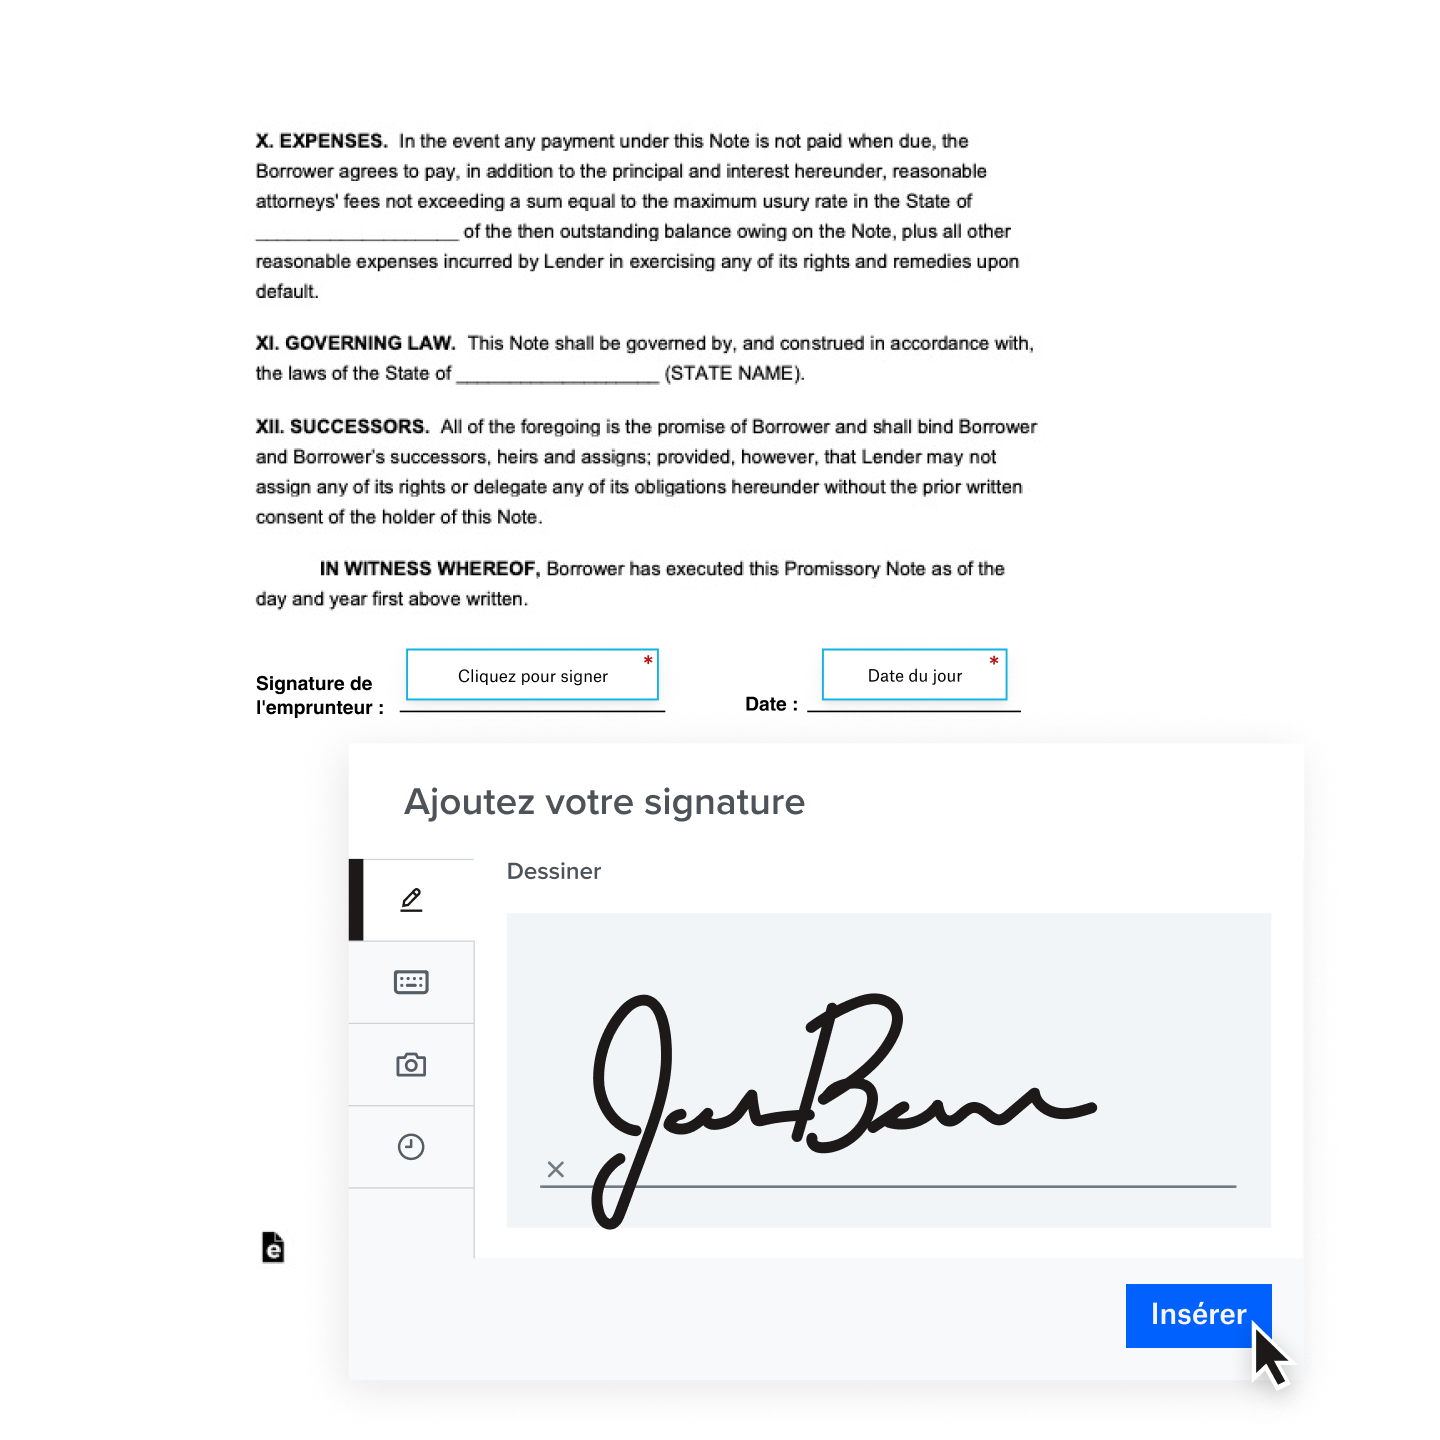 Version numérique d’une signature manuscrite ajoutée à un contrat